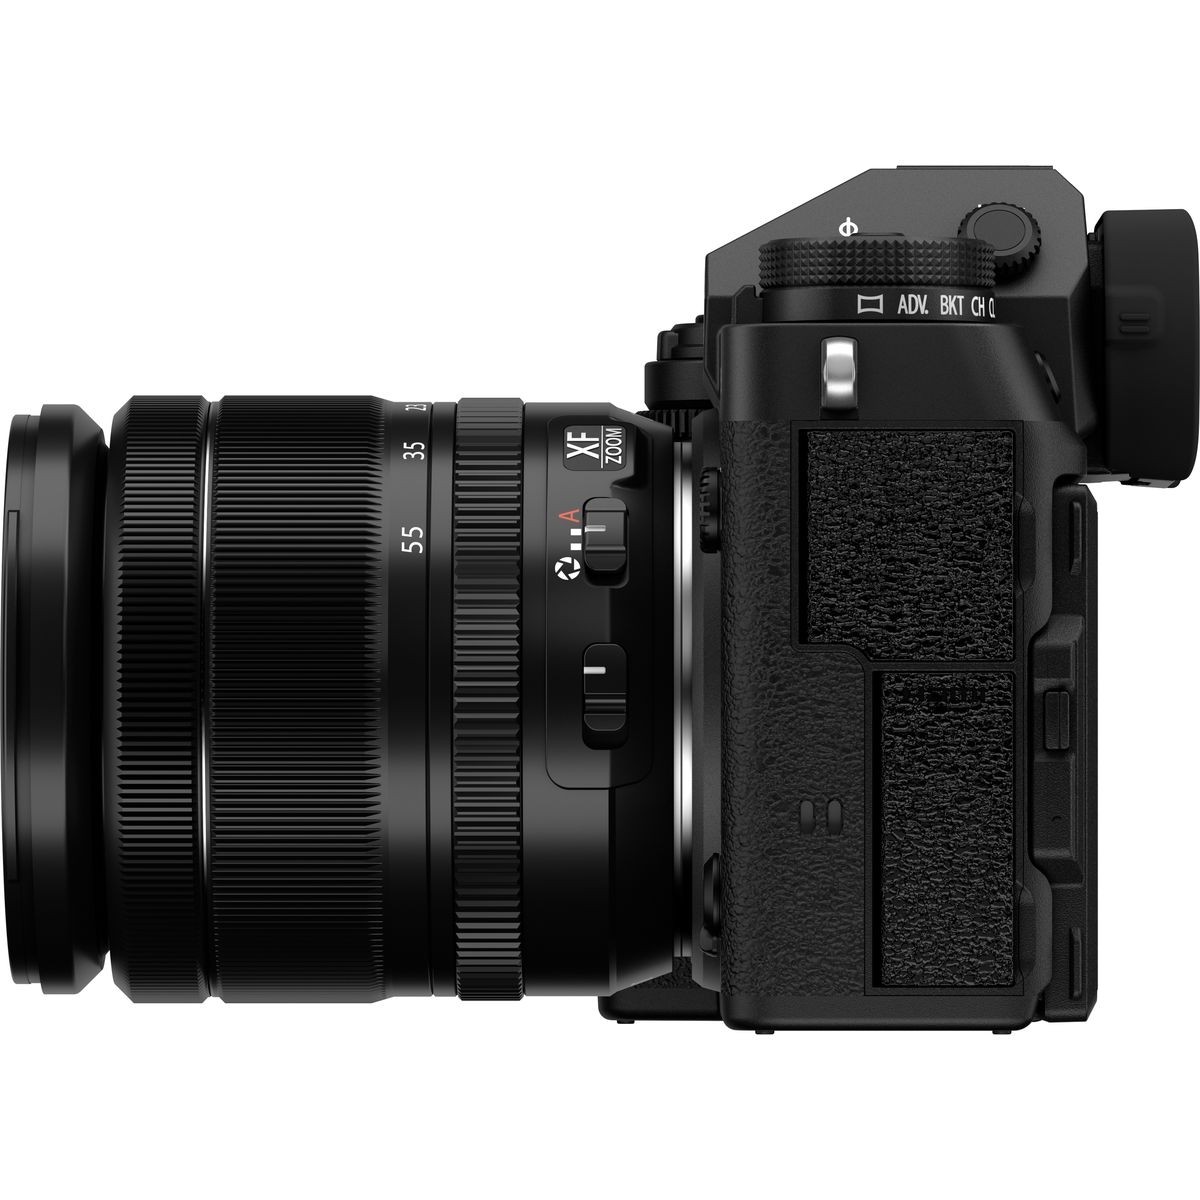 Fujifilm X-T5 + XF18-55 Black 